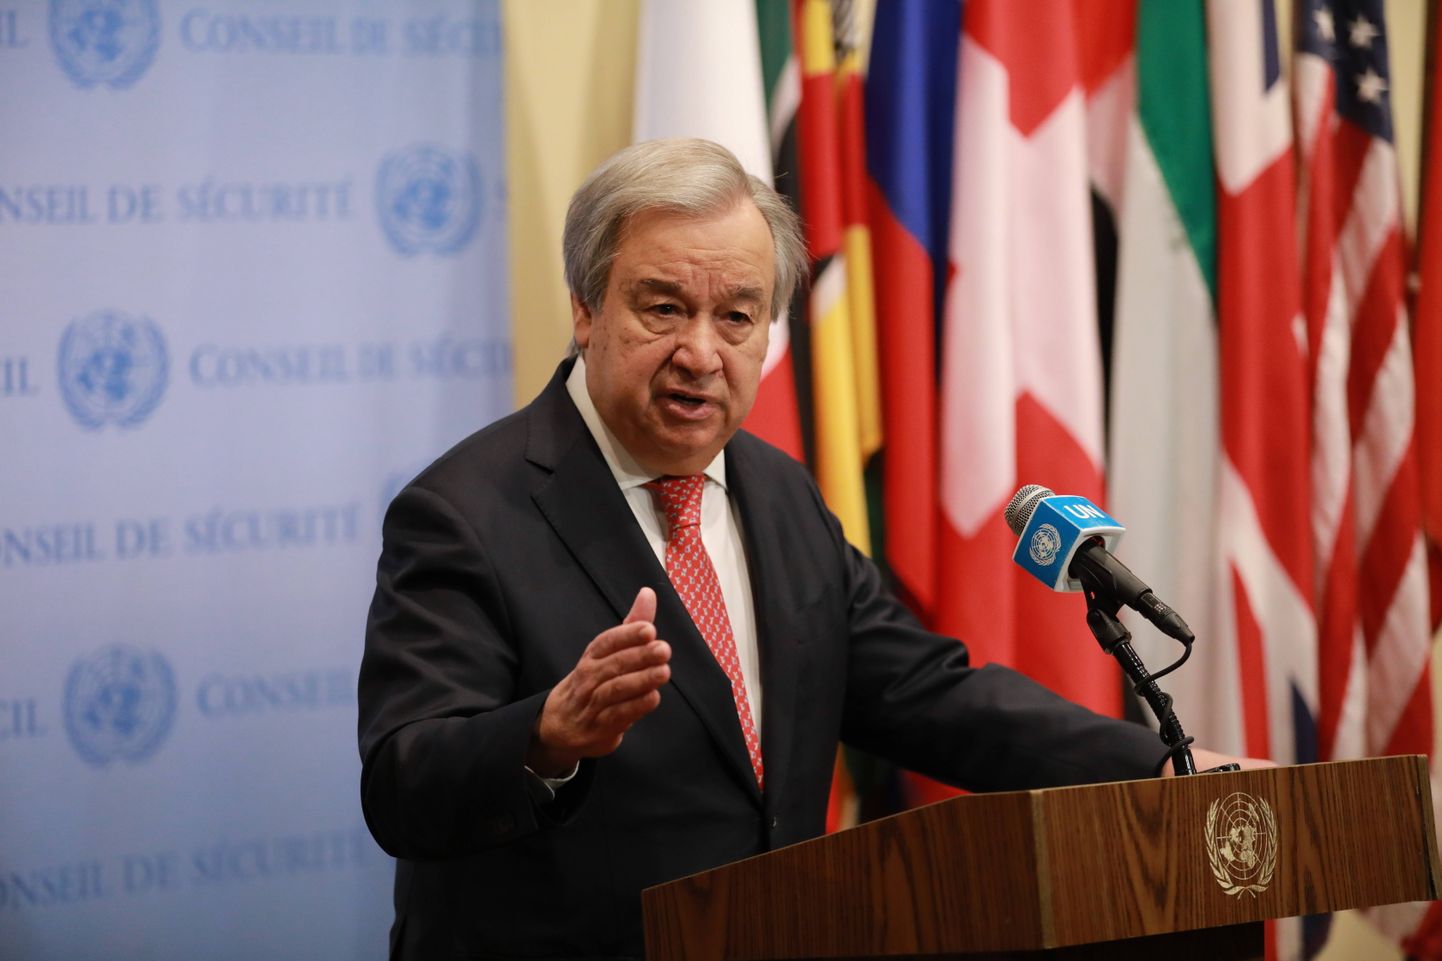 ÜRO peasekretär António Guterres rääkimas maavärinast Türgis ja Süürias ÜRO peakorteris 9. veebruaril.